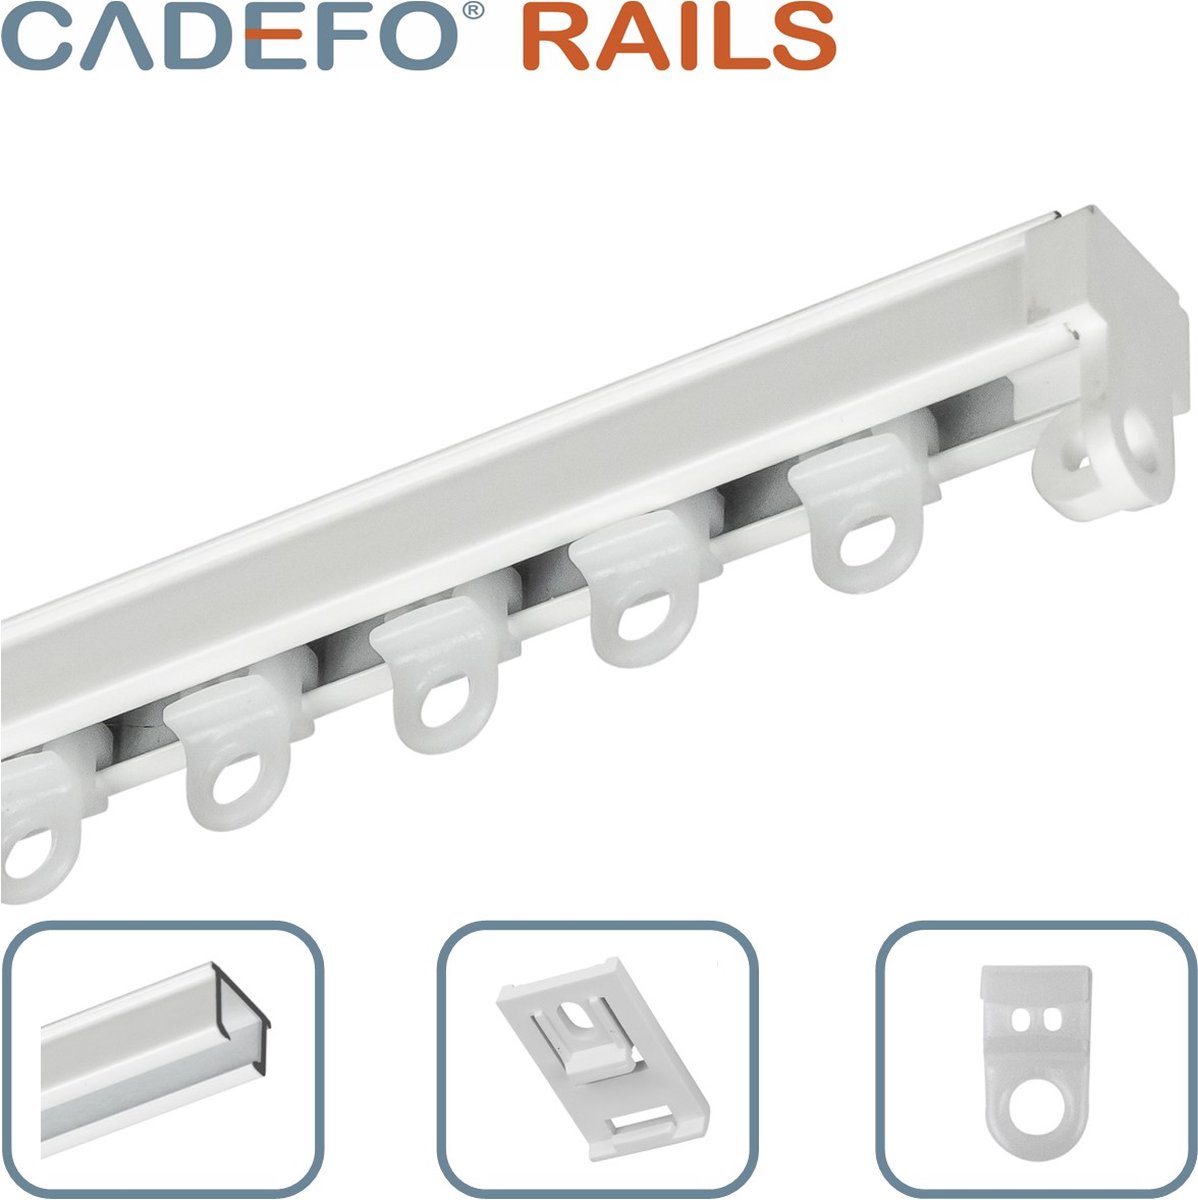 CADEFO RAILS (451 - 500 cm) Gordijnrails - Compleet op maat! - UIT 1 STUK - Leverbaar tot 6 meter - Plafondbevestiging - Lengte 473 cm